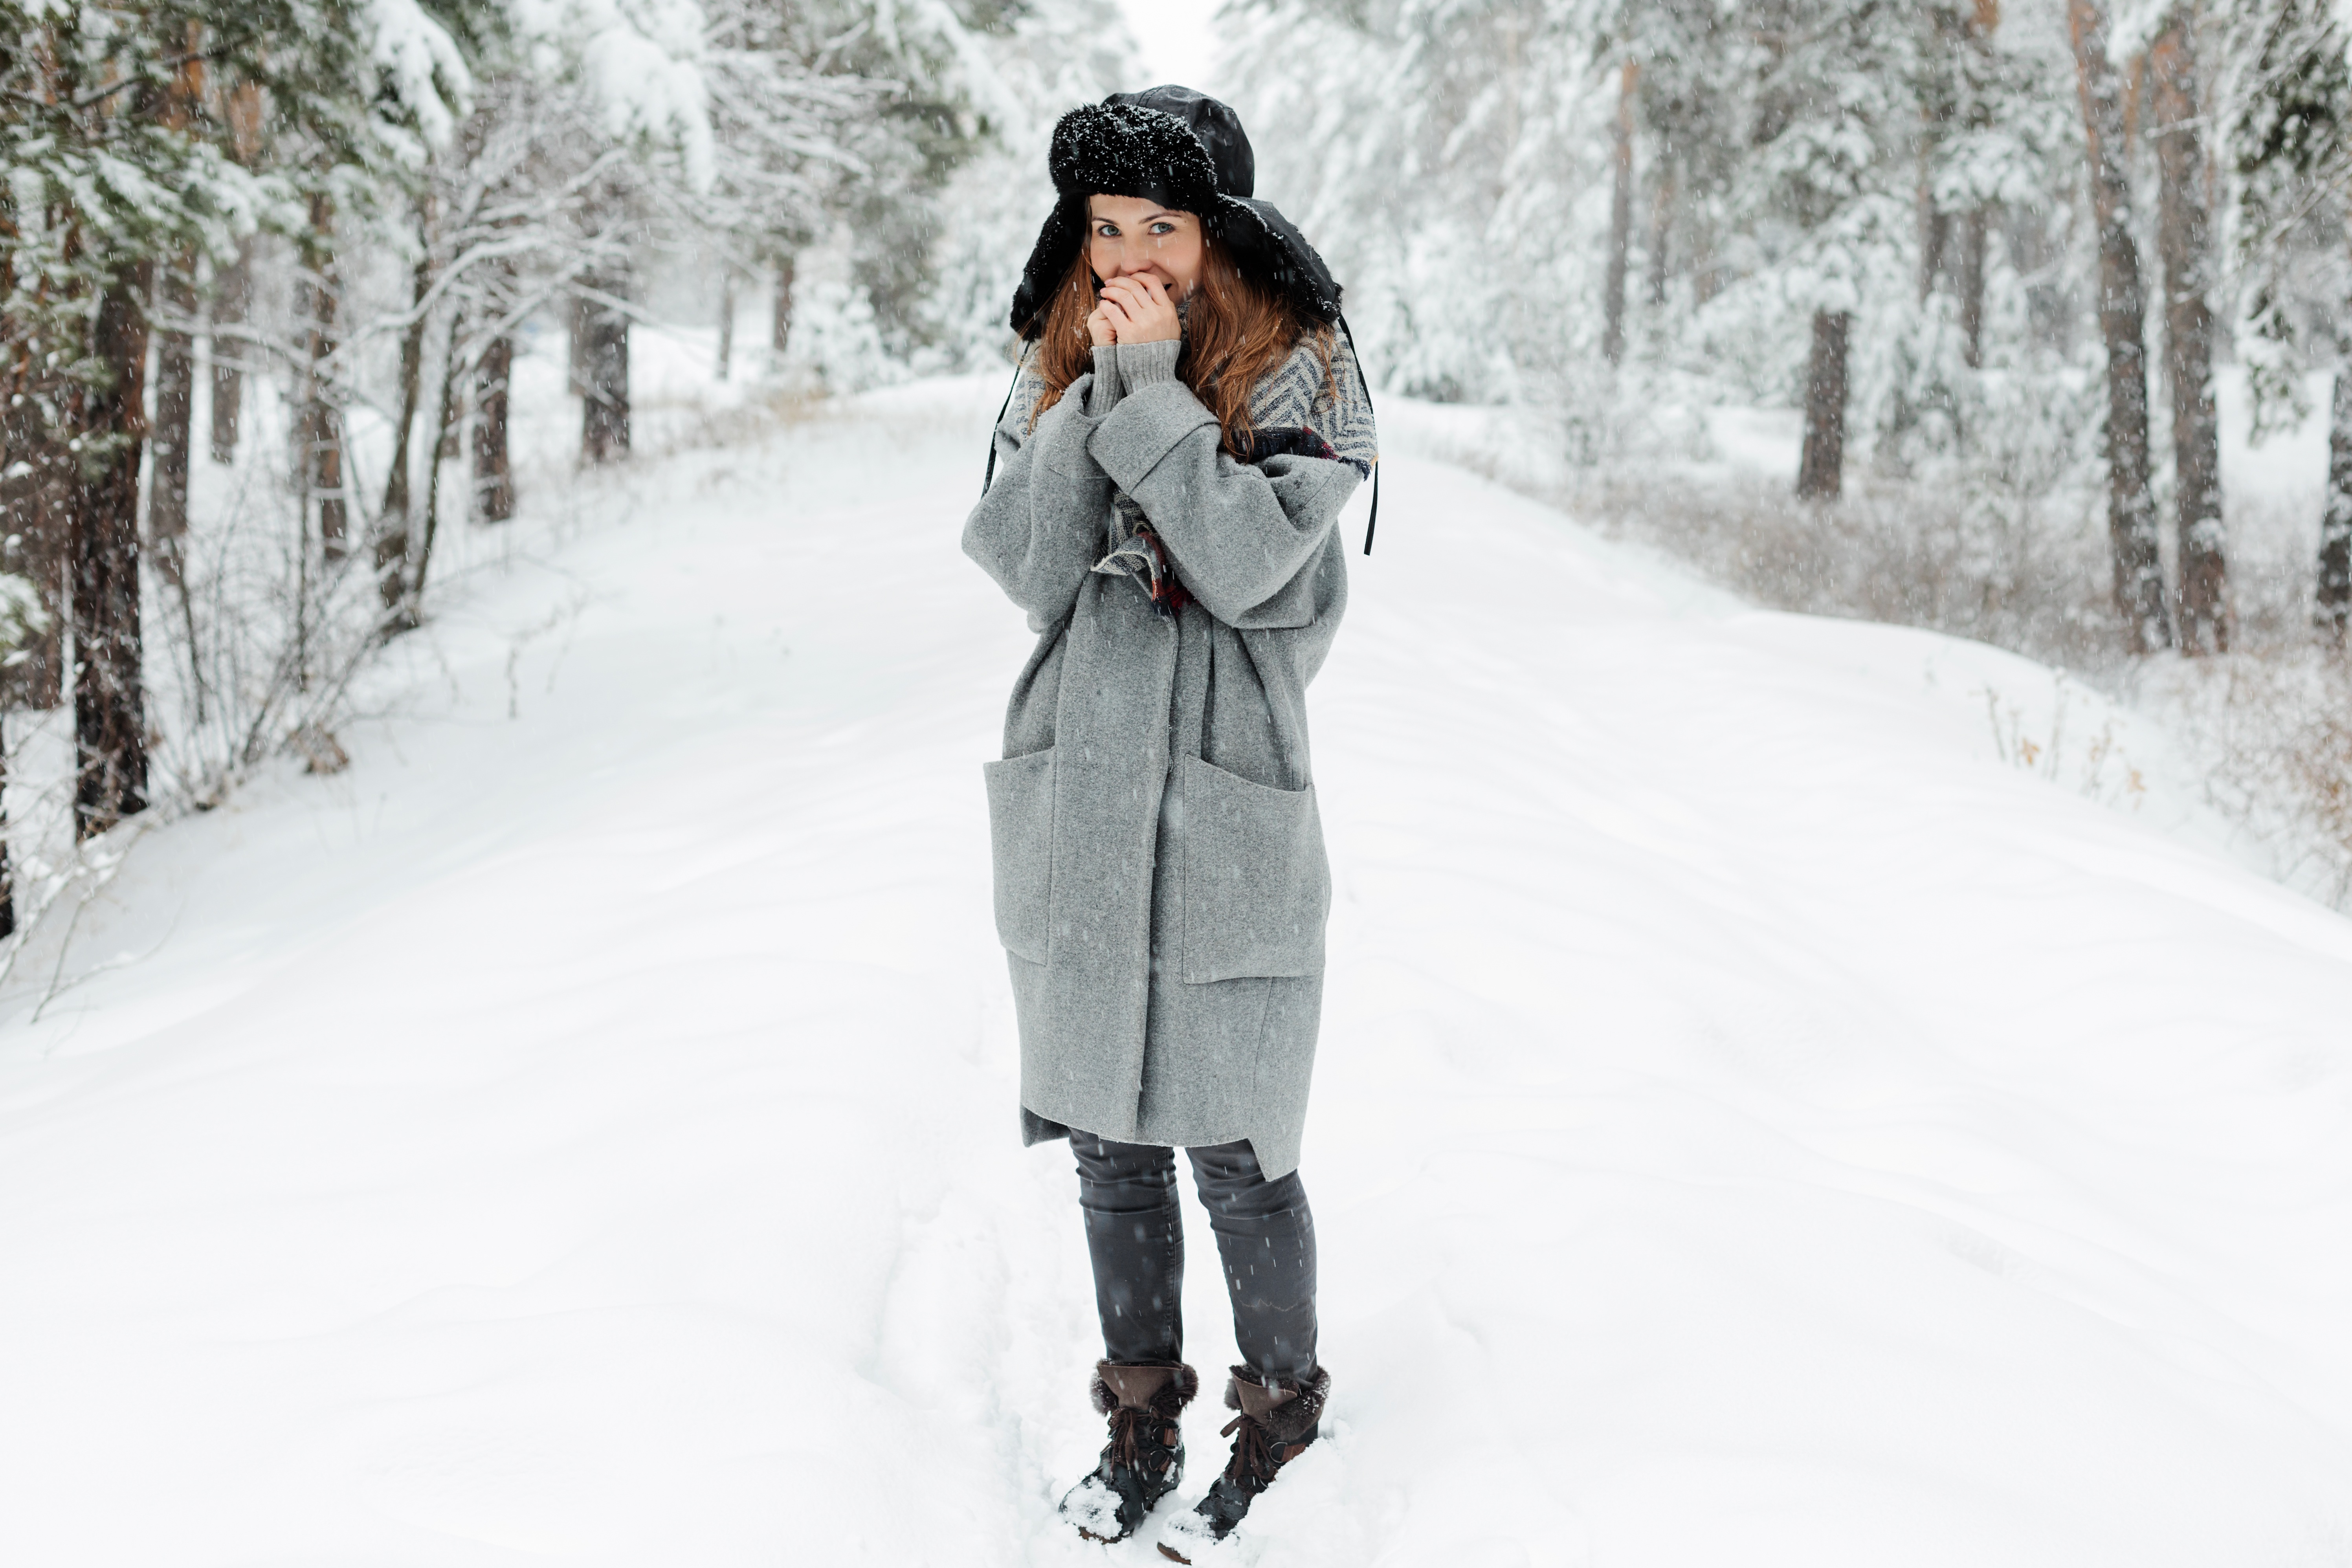 Девочки на трассе зимой. Пальто в зимние Морозы. Девушка на трассе зимой. Девушка замерзшая в пальто. Https pixabay com ru images search